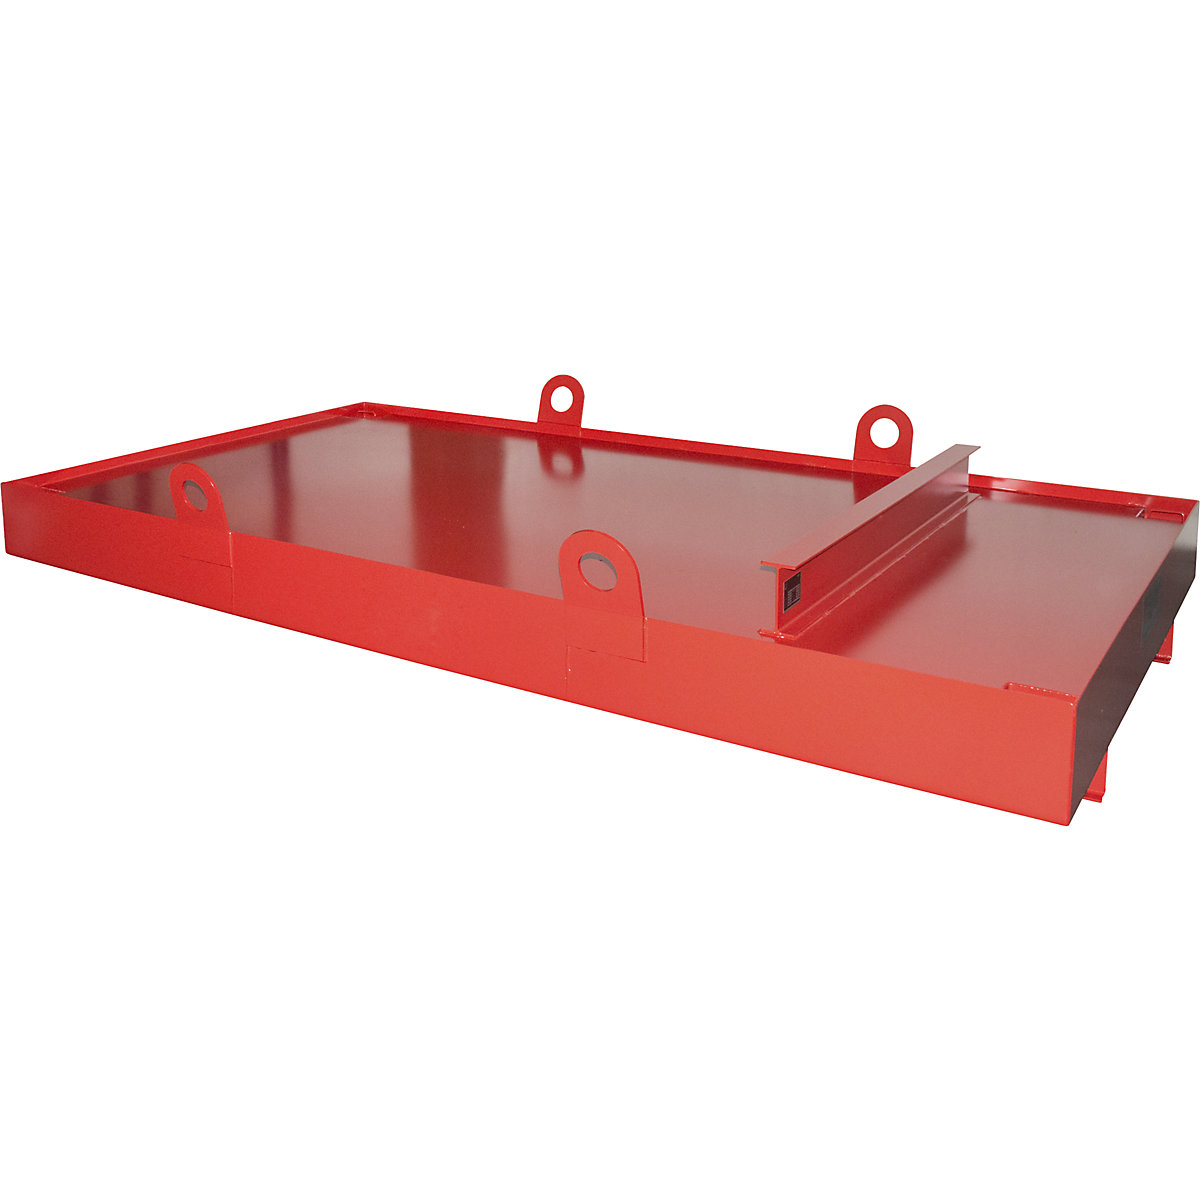 Vasca di raccolta per container da appoggio – eurokraft pro, per container da appoggio, capacità di raccolta 1276 l, rosso-1